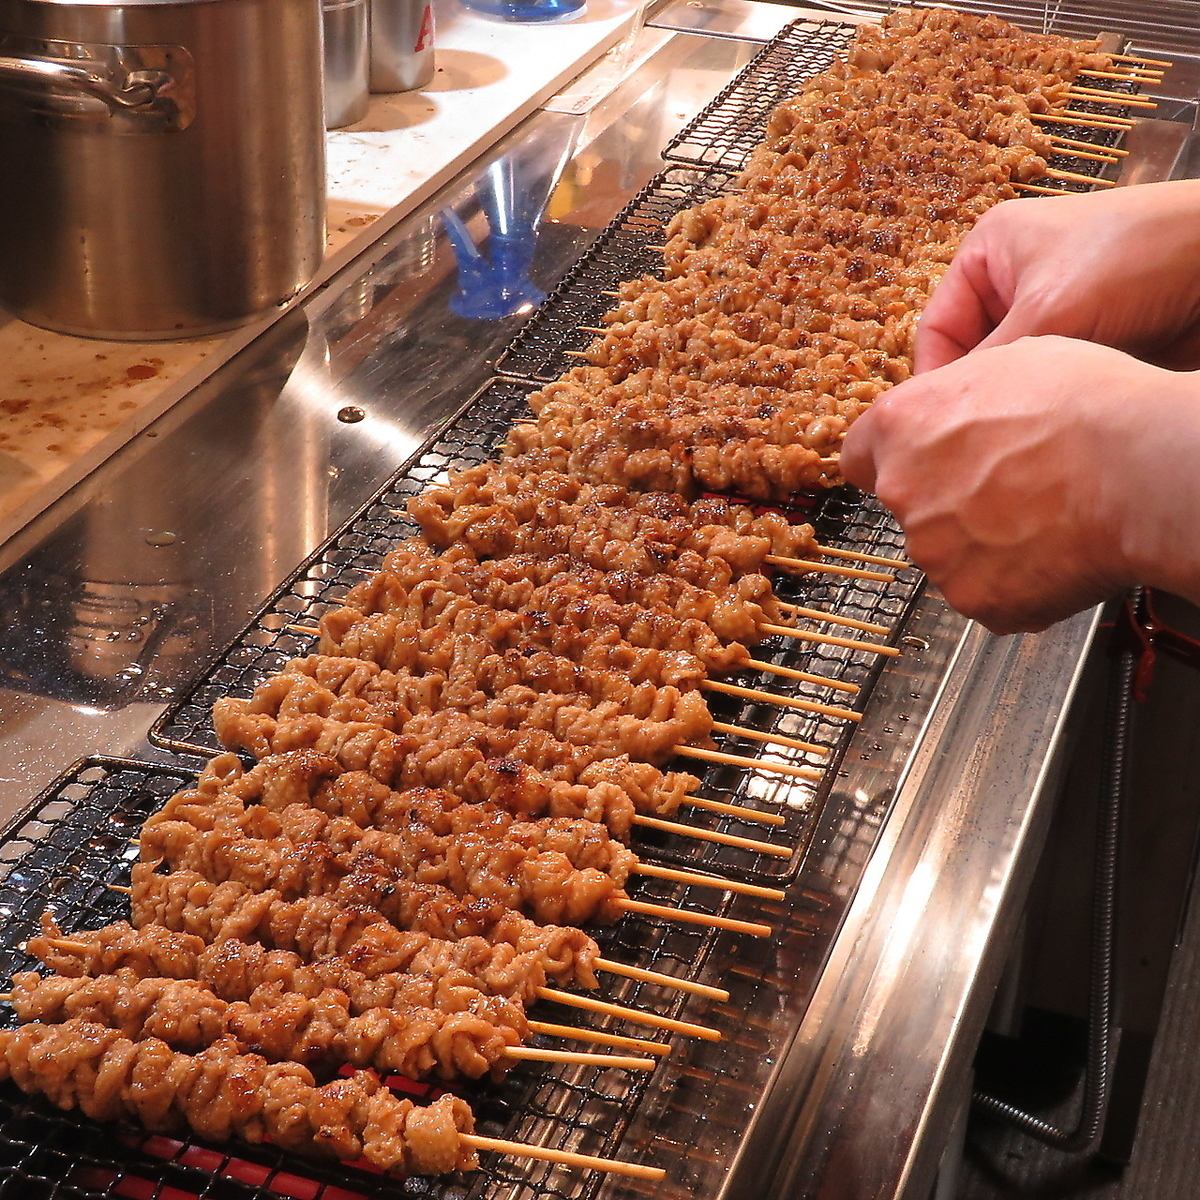 可以品嚐到精通烤雞肉串的店主精心烤製的美味烤雞肉串。